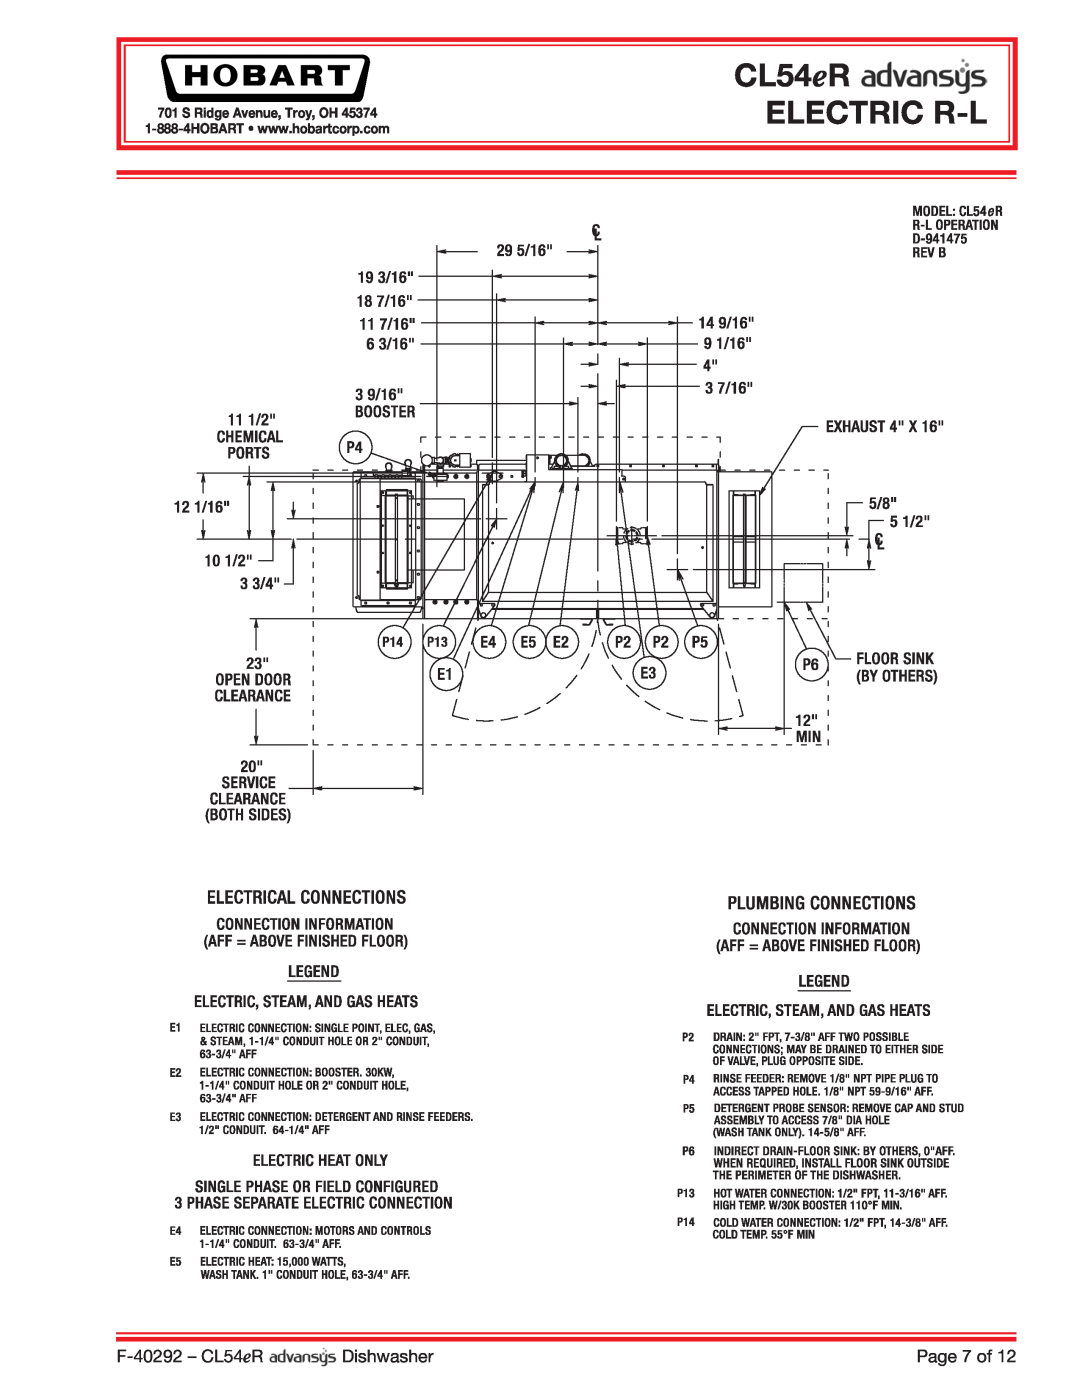 Hobart CL54ER dimensions CL54eR ELECTRIC R-L, F-40292- CL54eR, Dishwasher, Page 7 of, S Ridge Avenue, Troy, OH 